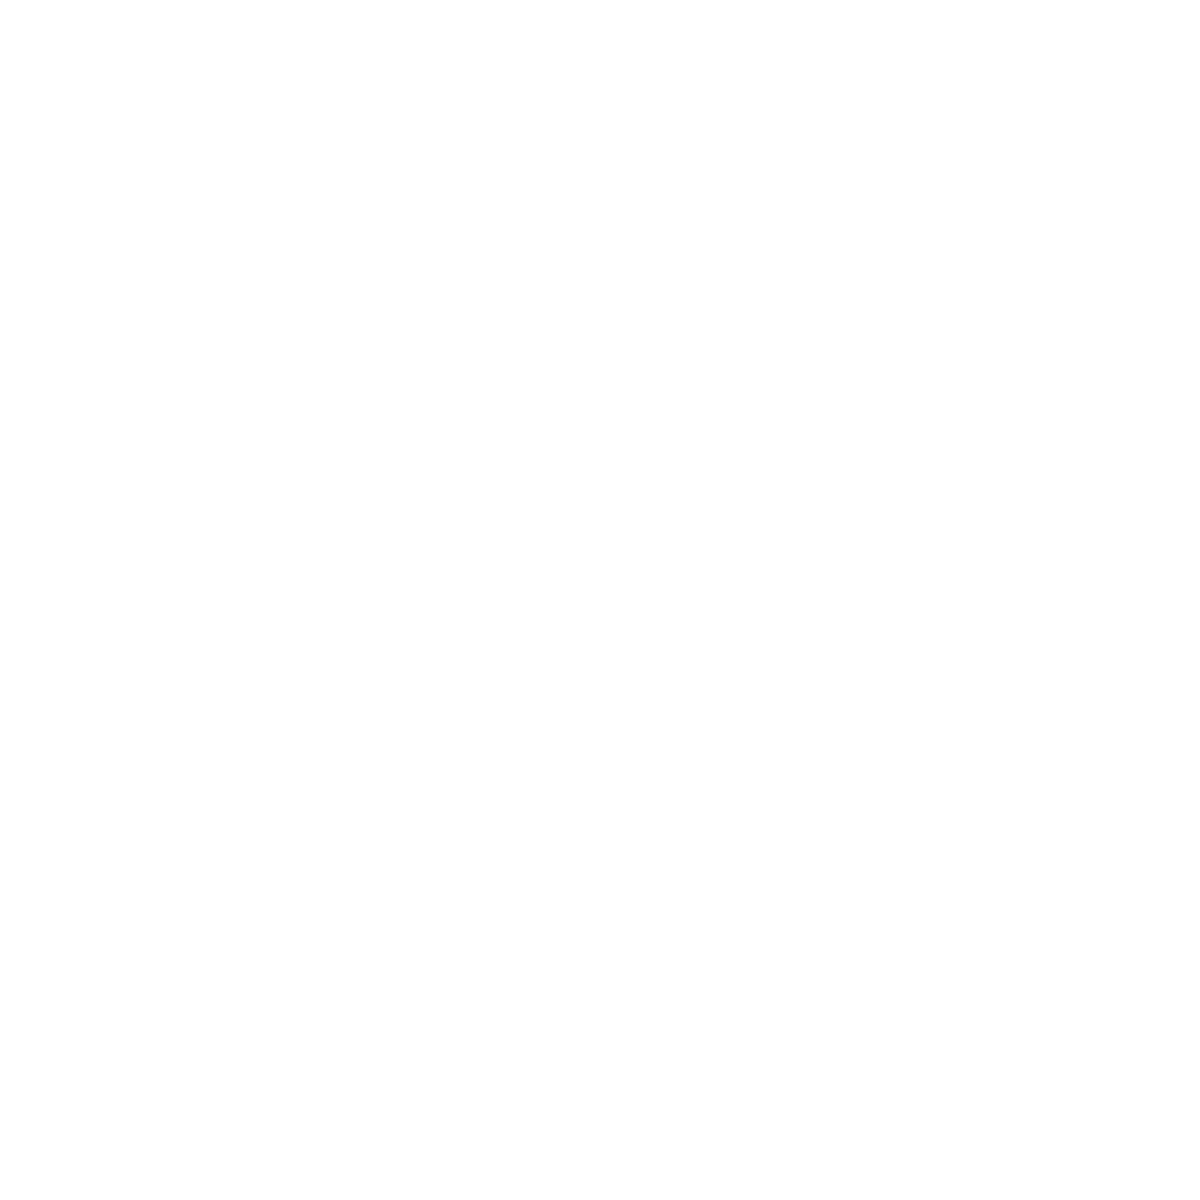 Restaurant PNG Image File